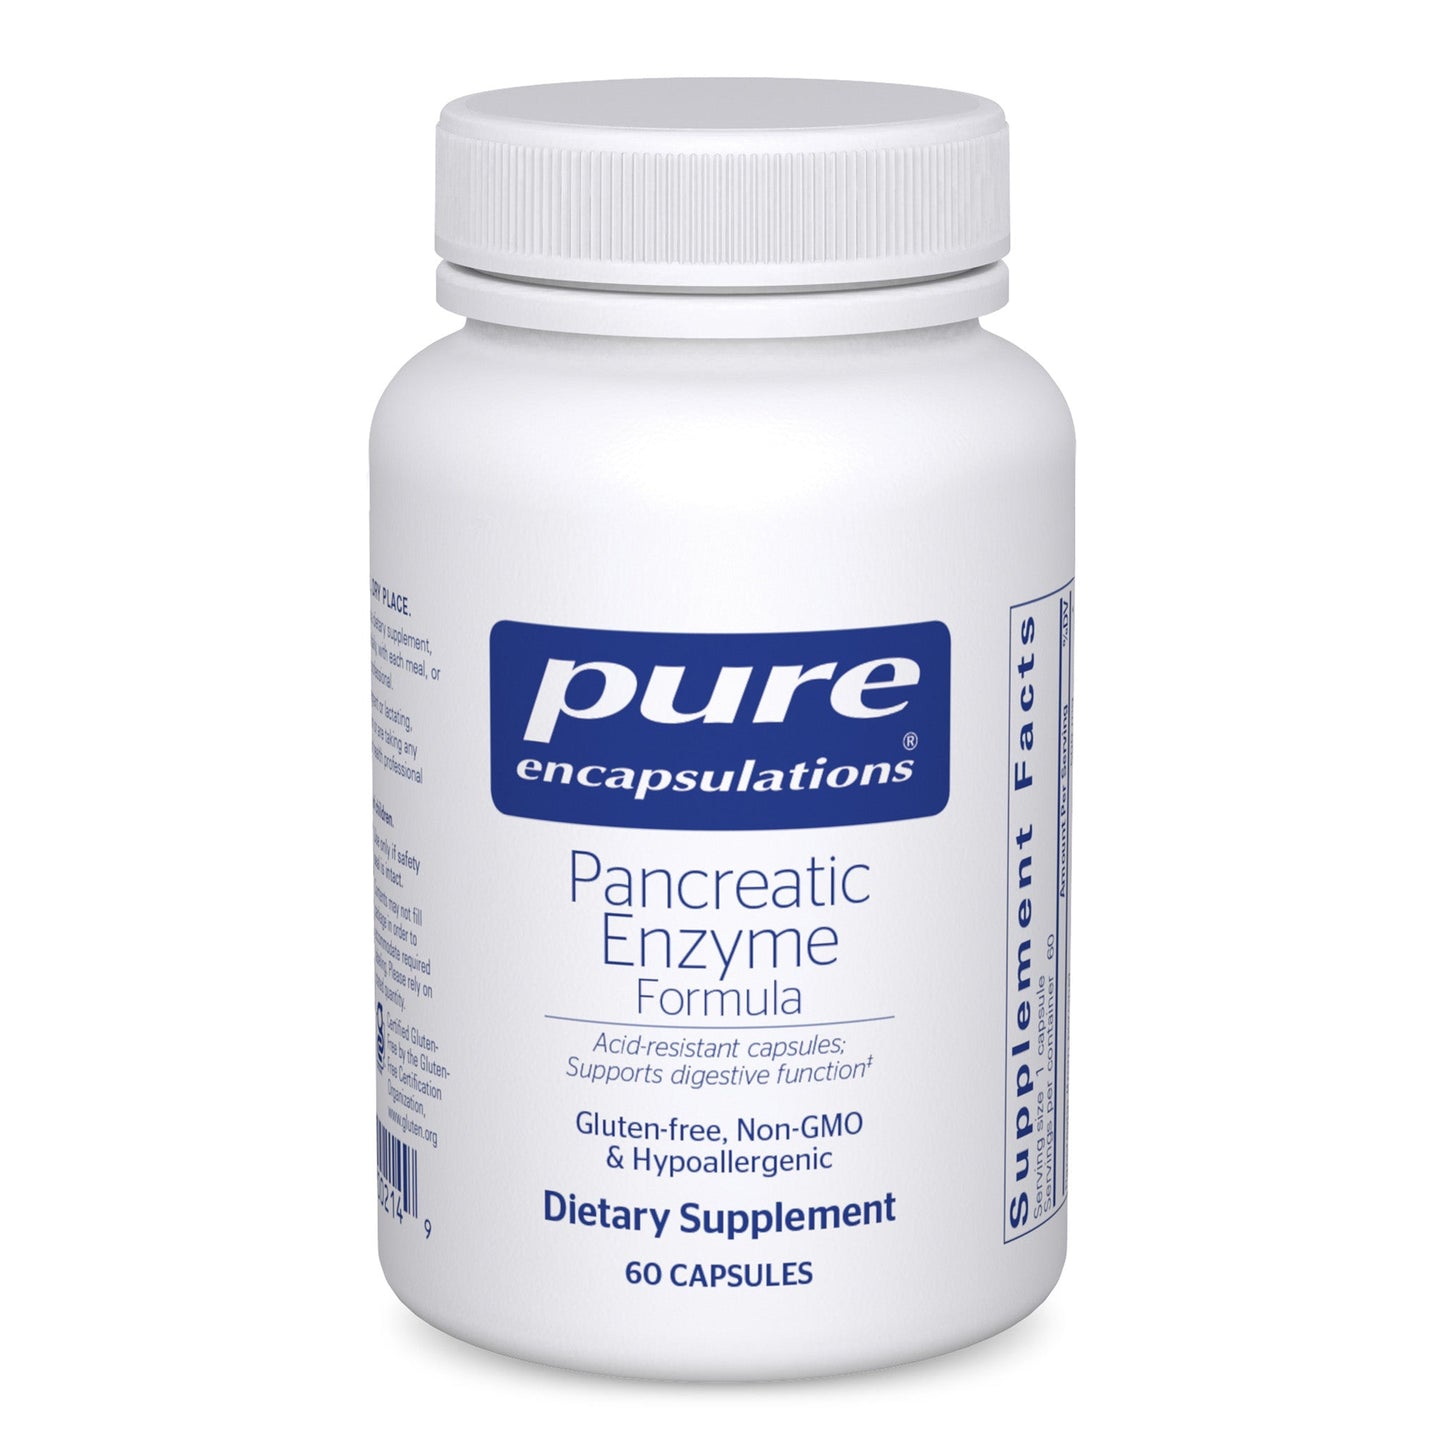 Pancreatic Enzyme